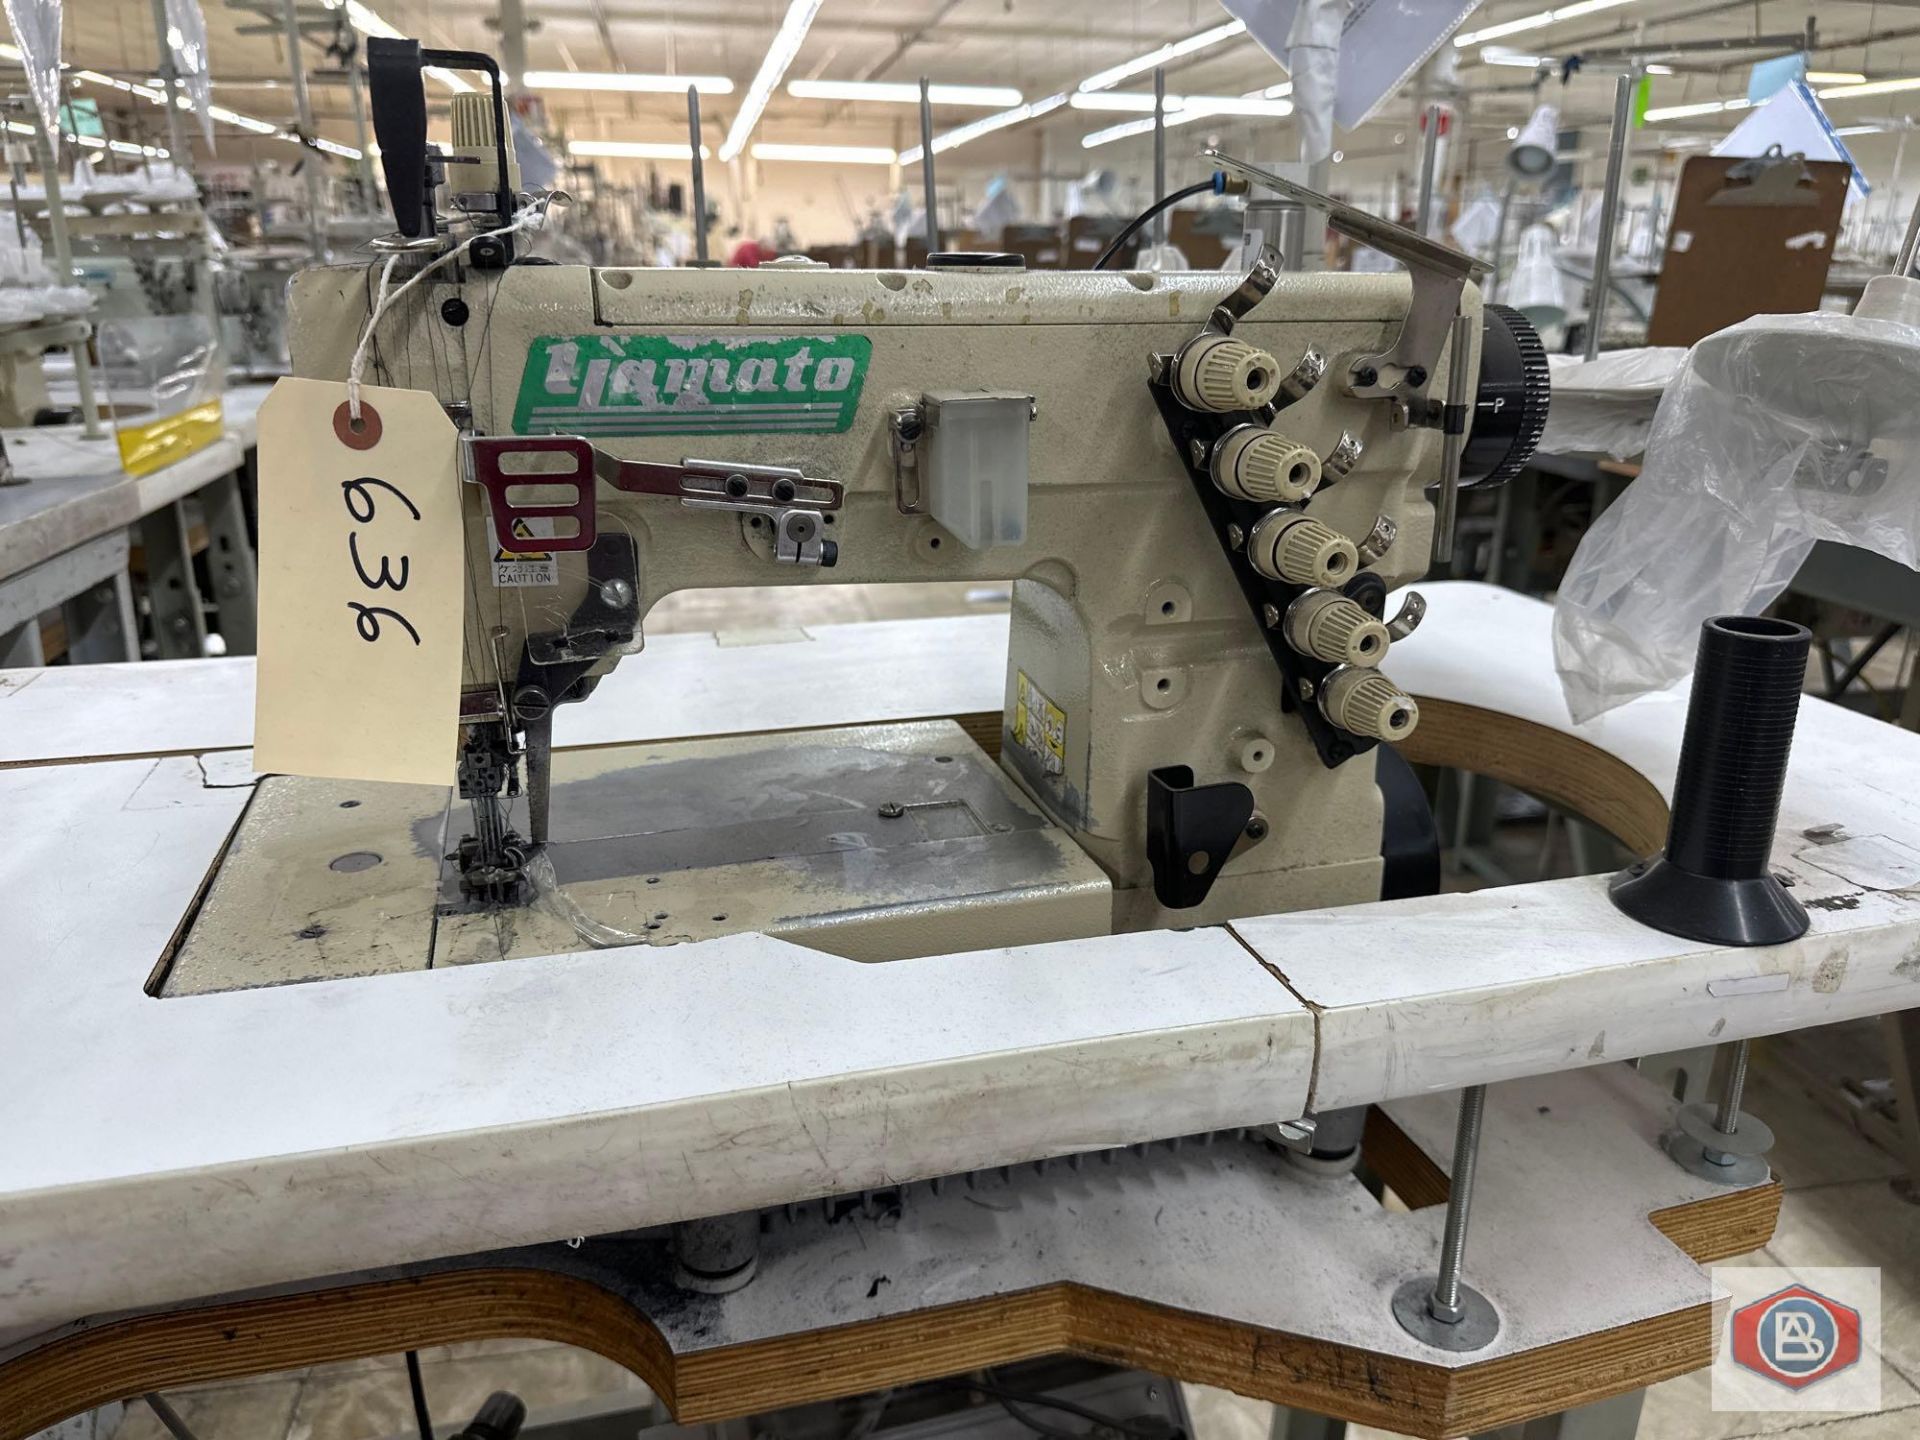 Yamato Sewing Machine - Image 6 of 6